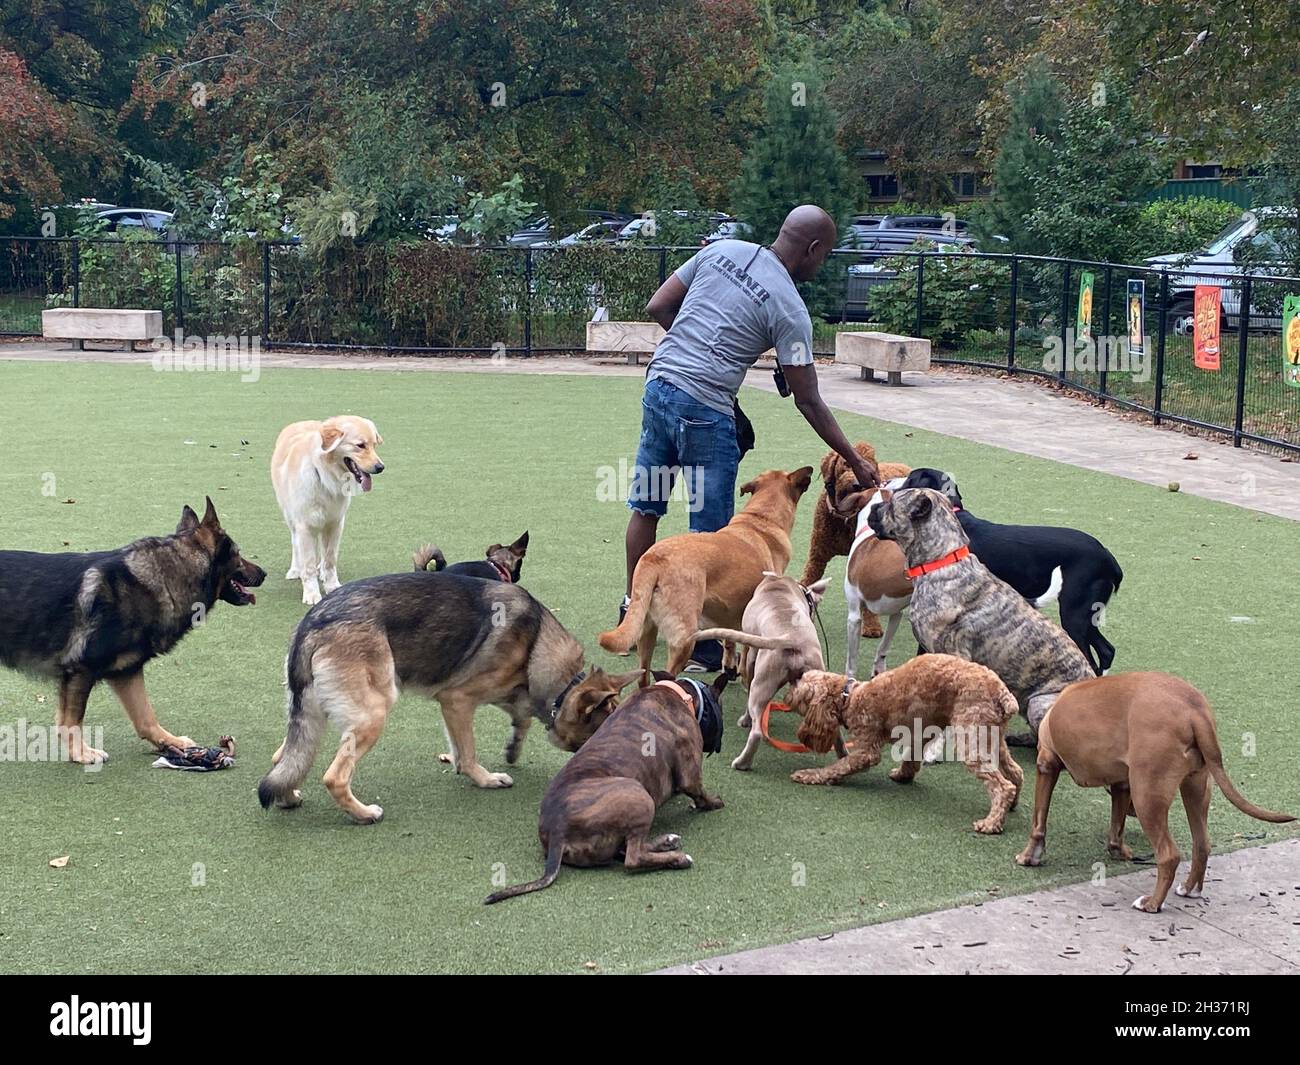 Professioneller Hundewanderer und Trainer arbeitet mit einer Packung meist großer Hunde bei AT Dog, die von Prospect Park, Brooklyn, New York, betrieben wird. Stockfoto